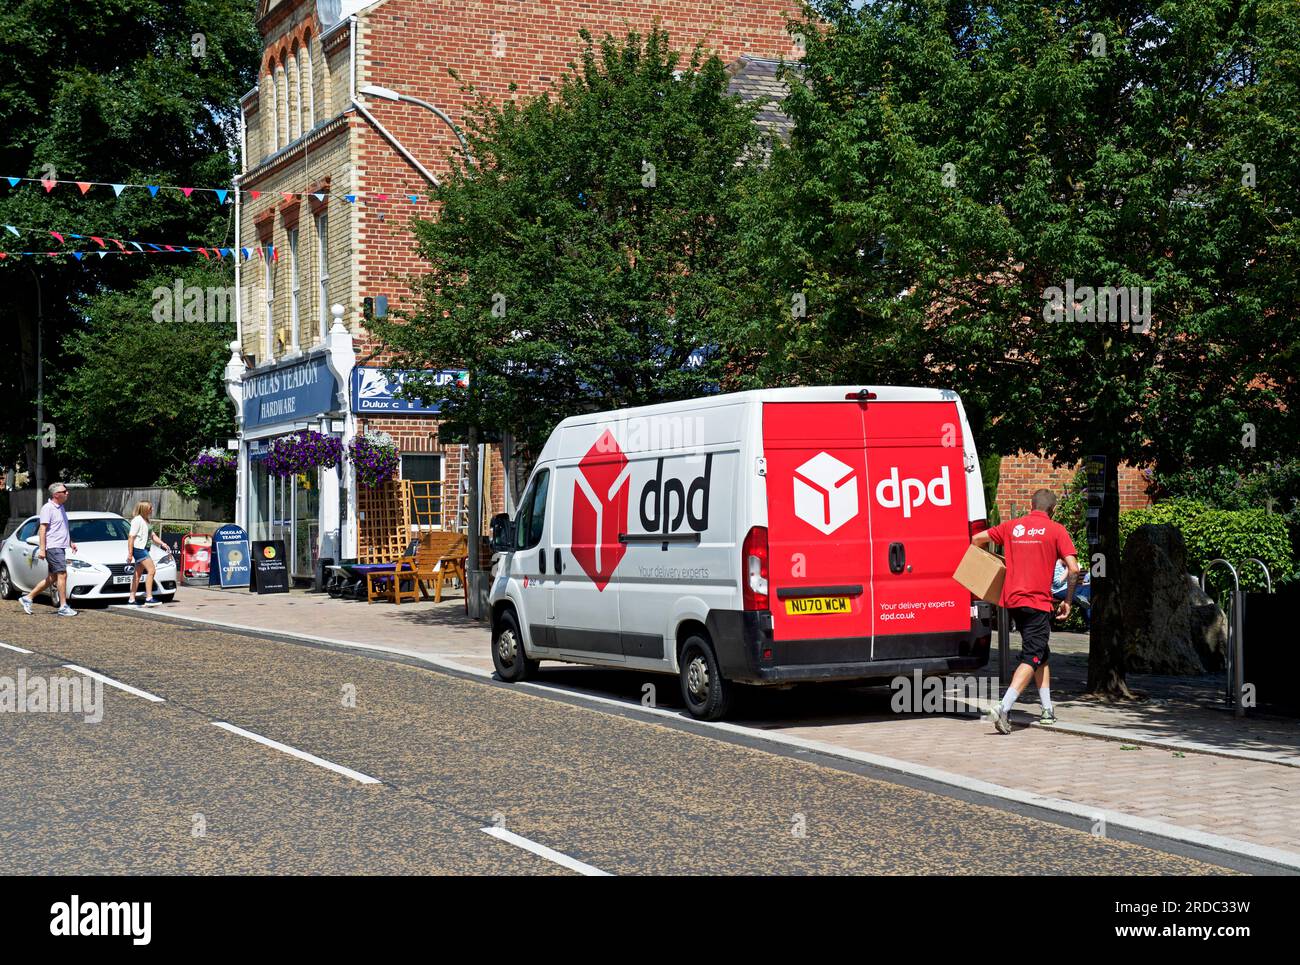 Fourgon de livraison DPD dans le village de Boston Spa, West Yorkshire, Angleterre Royaume-Uni Banque D'Images